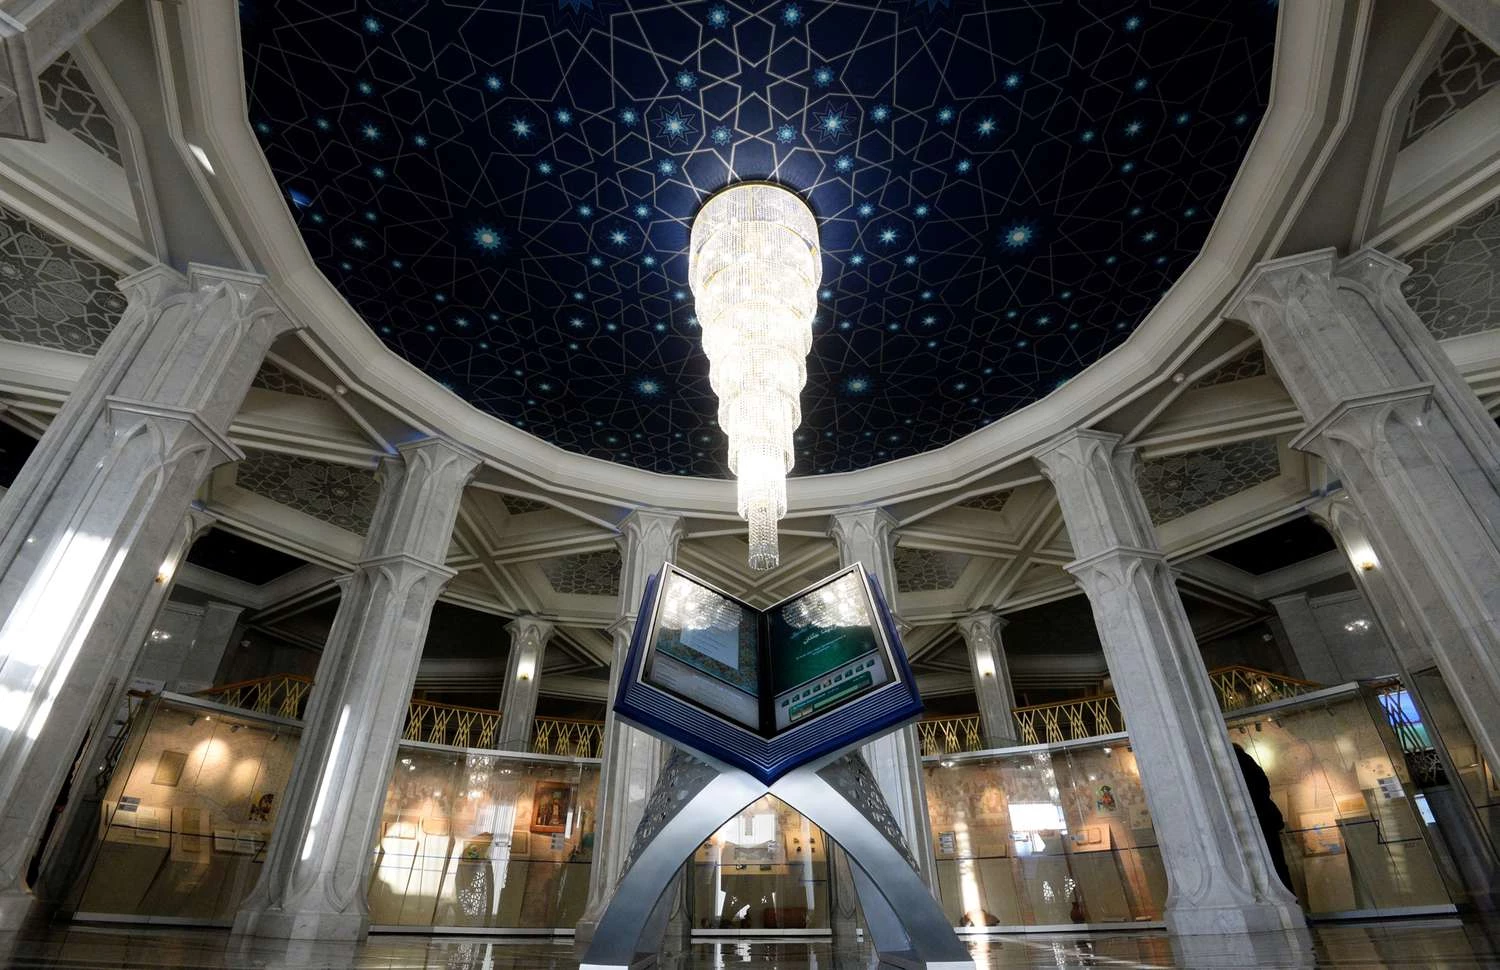 Музей исламской культуры в Казани